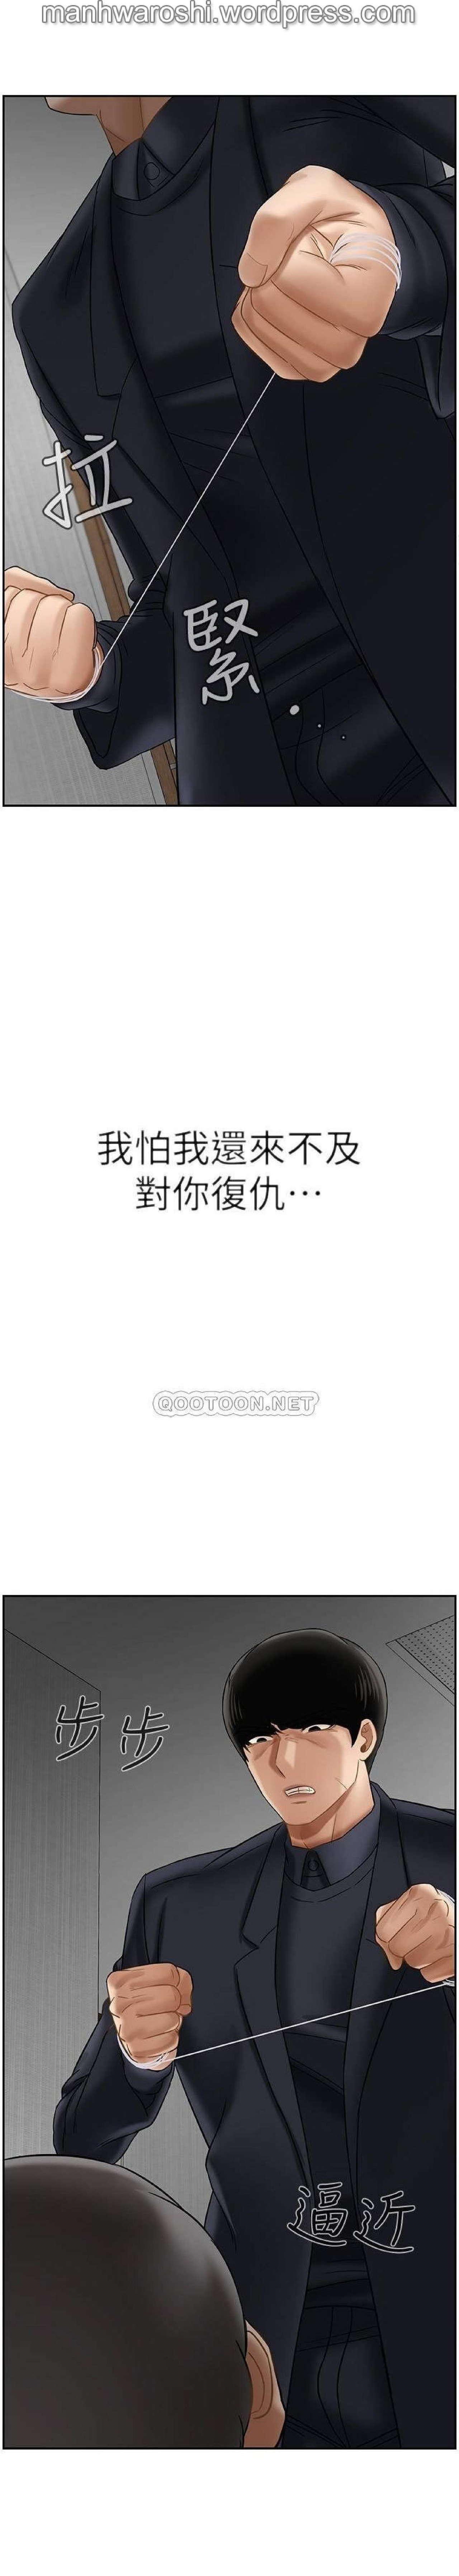 坏老师 | PHYSICAL CLASSROOM 21 [Chinese] Manhwa 37